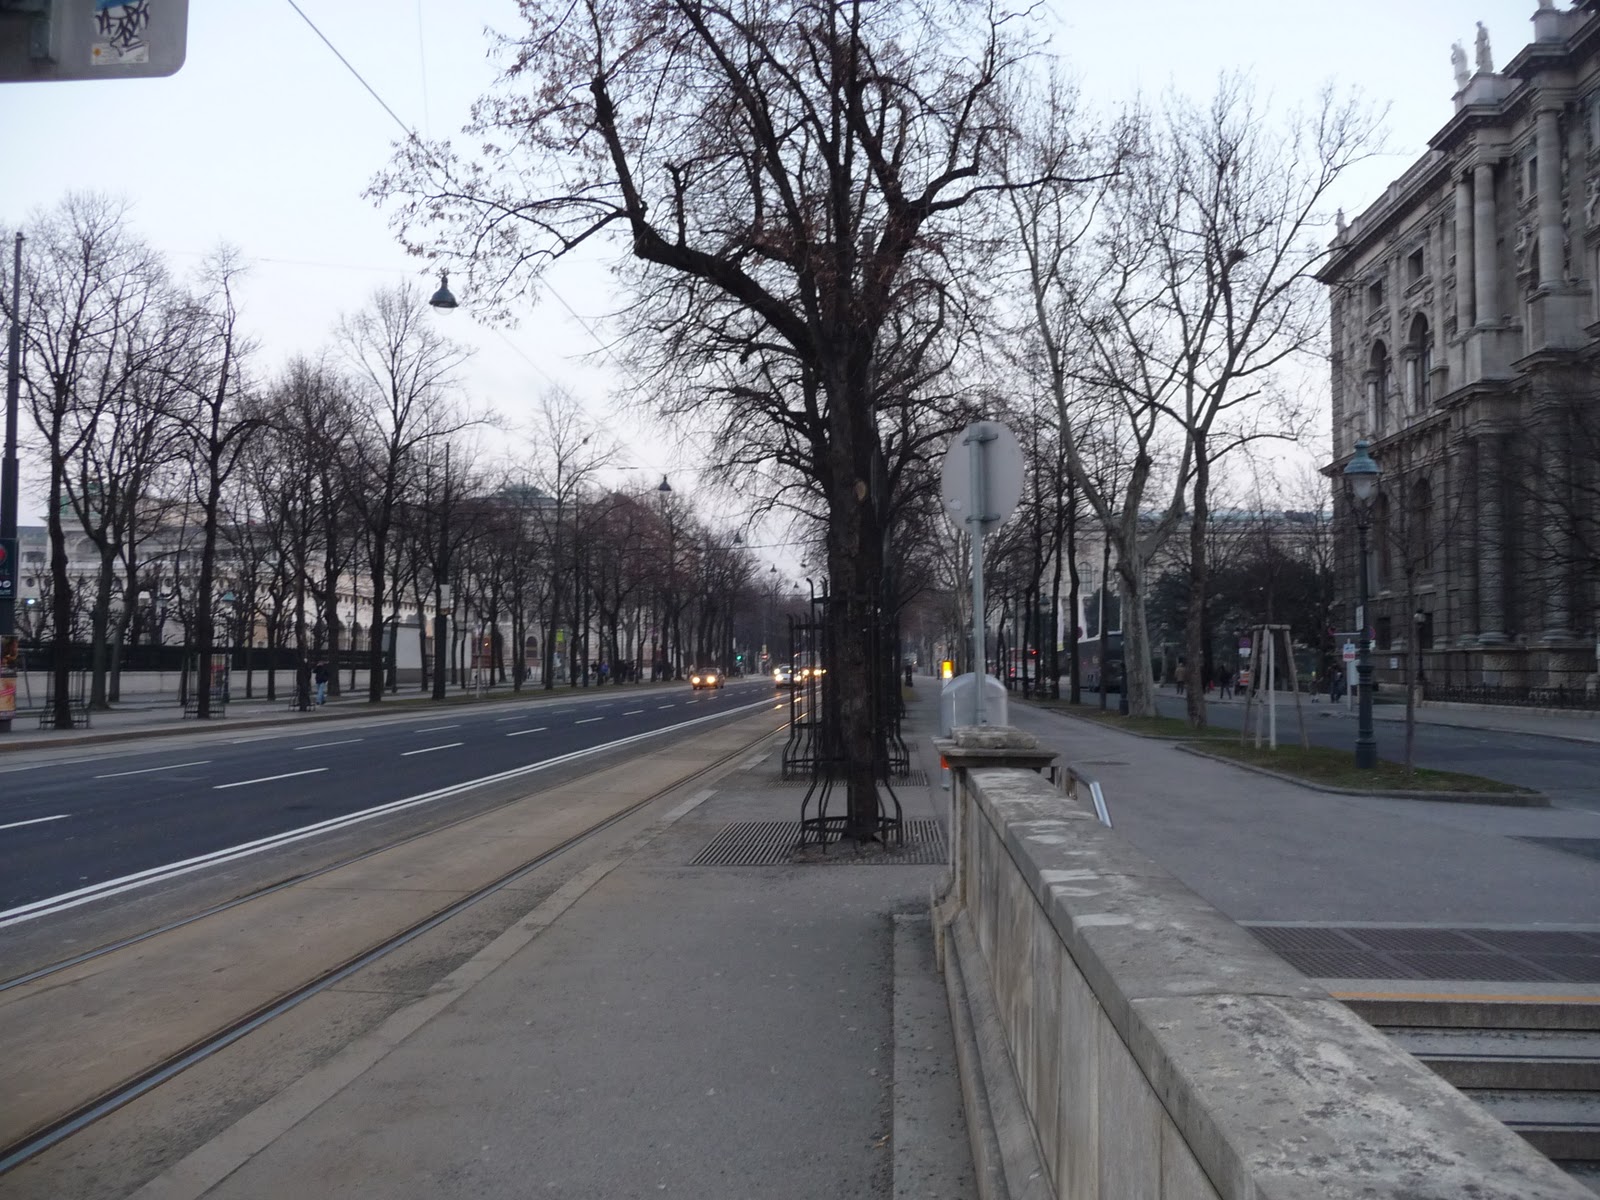 Where The Sidewalk Starts Worldwide Walking Vienna